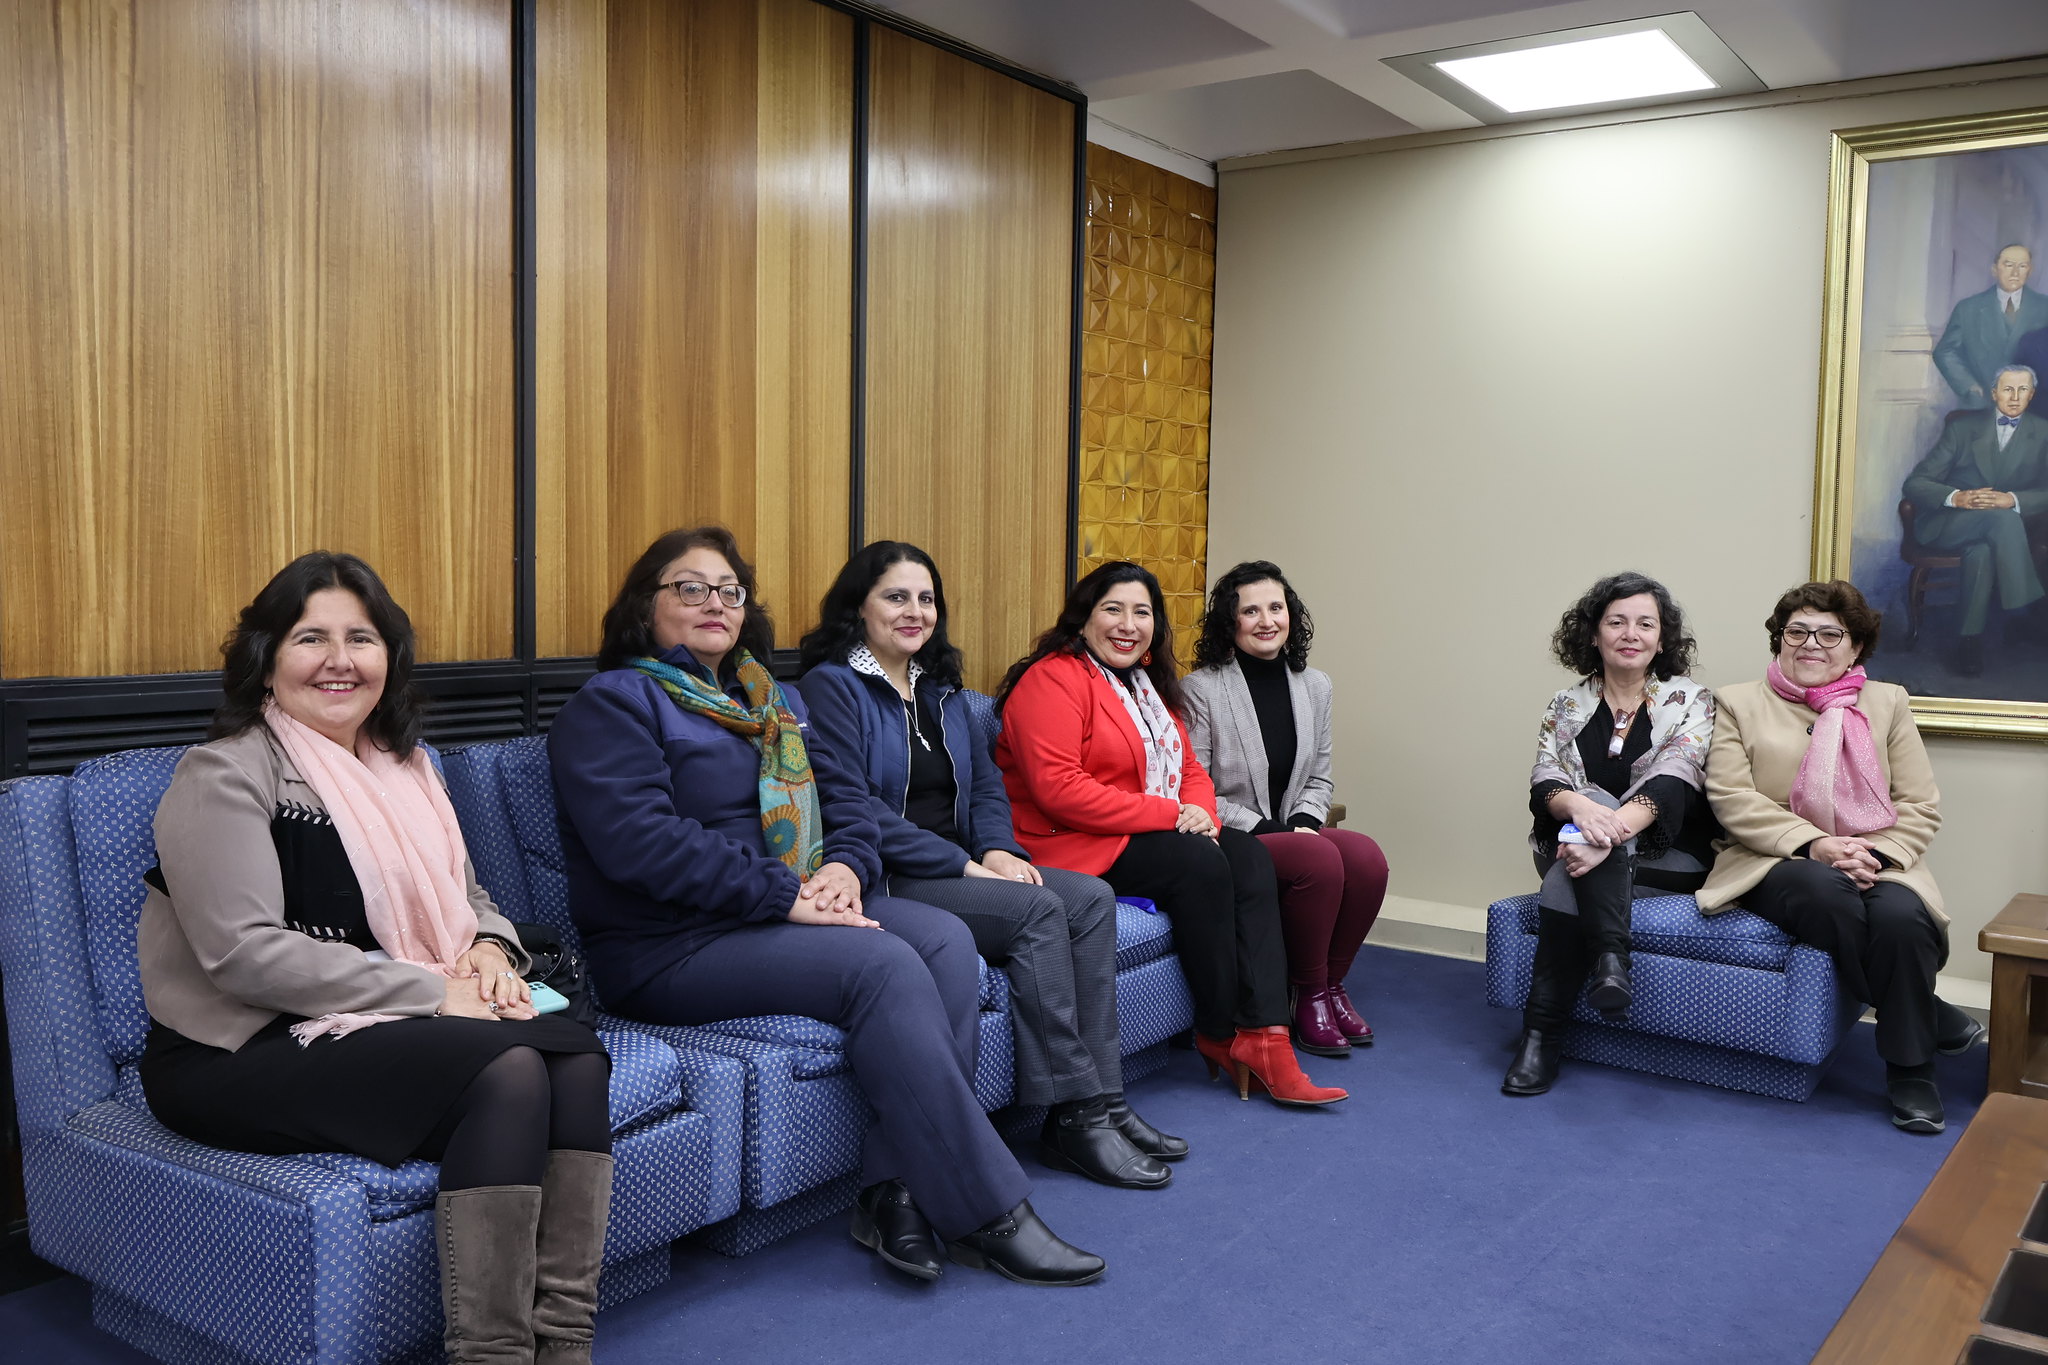 Imagen grupal de trabajadoras homenajeadas por sus 25 y 30 años de servicio en Bibliotecas UdeC junto a Directora Karen Jara Maricic durante actividad en entrada al Salón Azul del Edificio Central